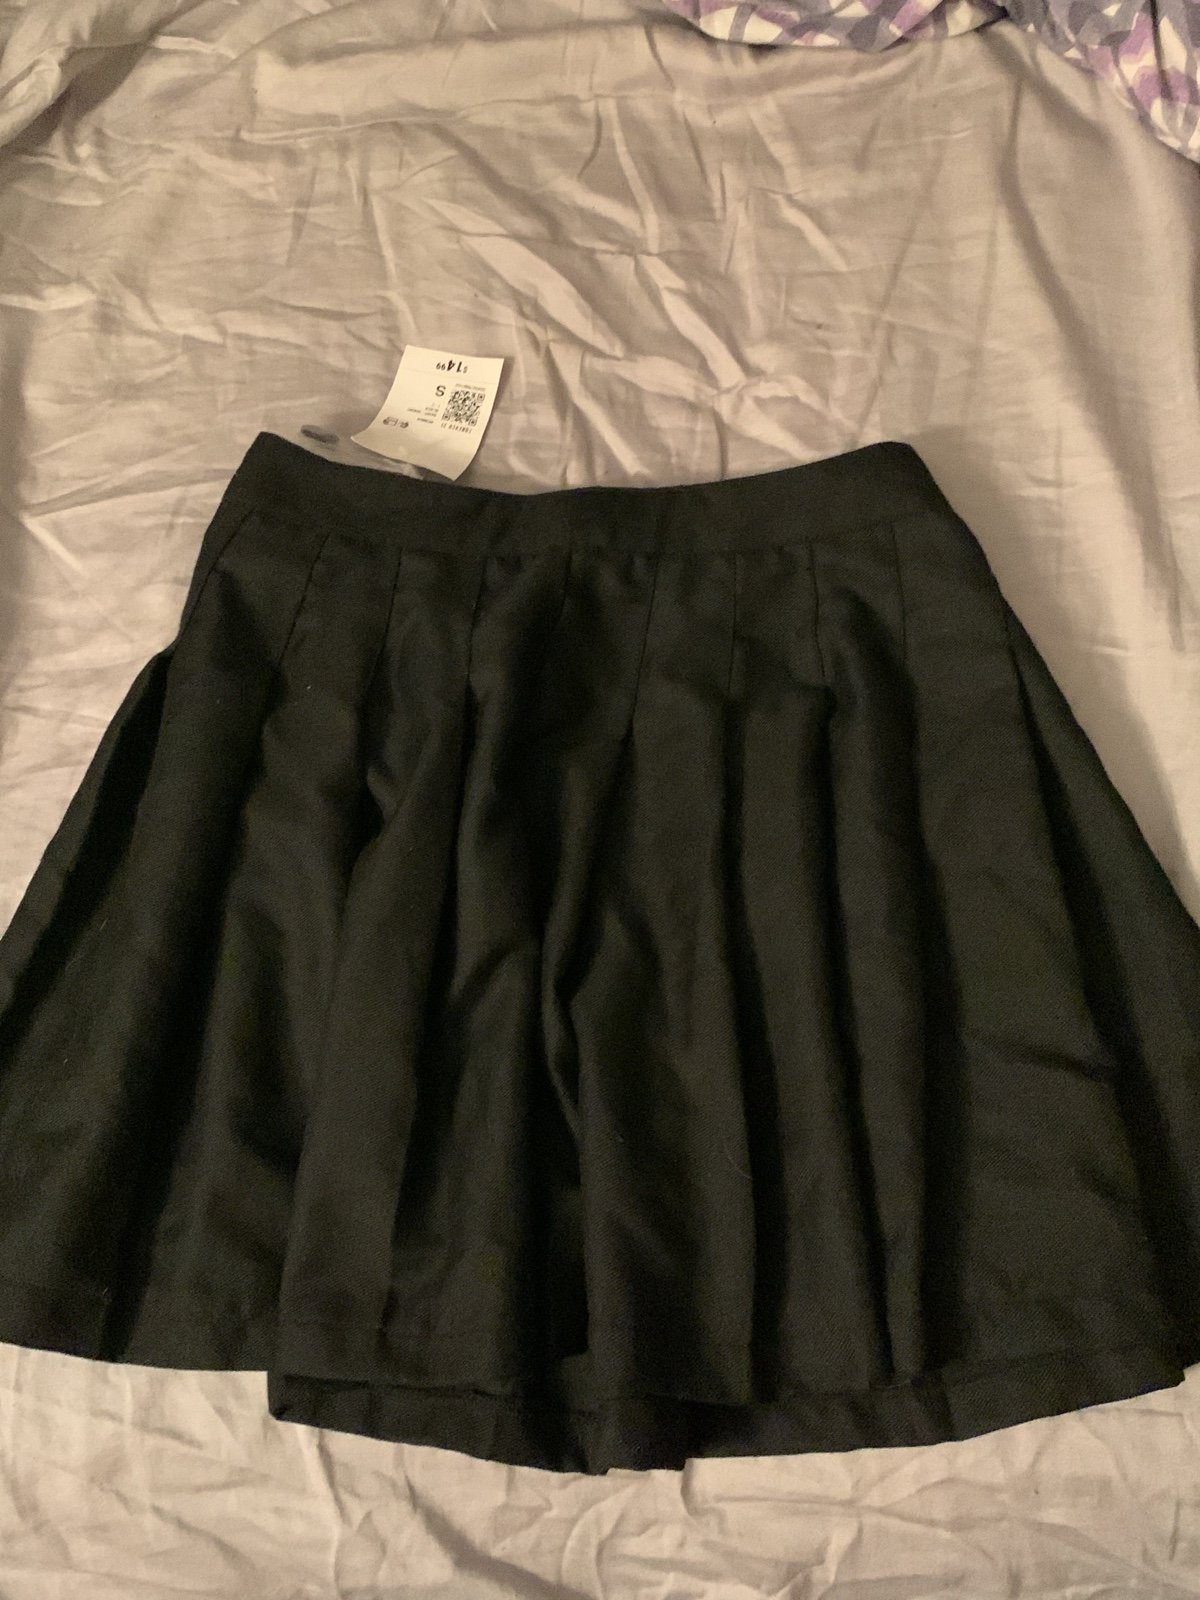 Custom Forever 21 black pleated skirt jCiIIVncW Online Shop